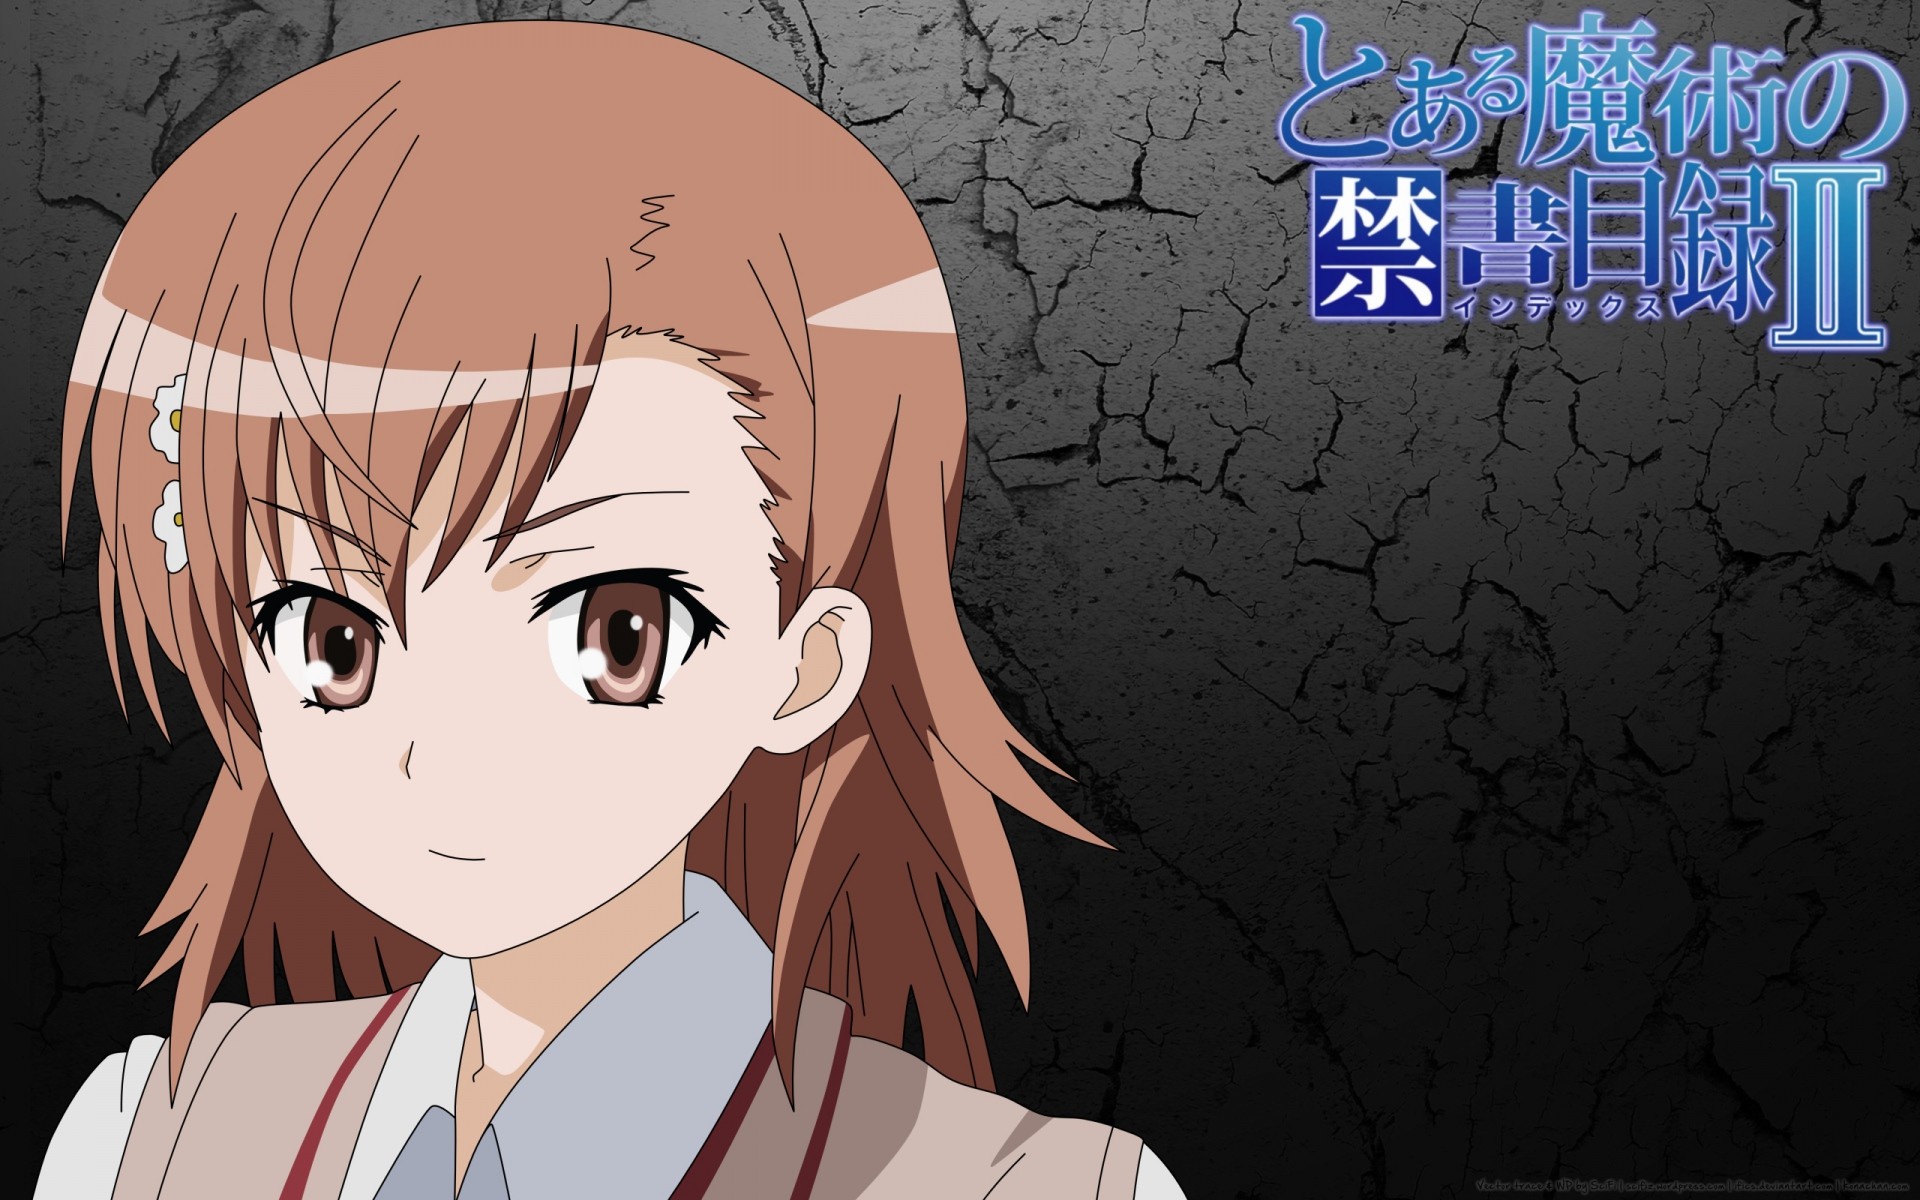 Anime 1920x1200 anime anime girls Misaka Mikoto To Aru Kagaku no Railgun To aru Majutsu no Index school uniform face brown eyes